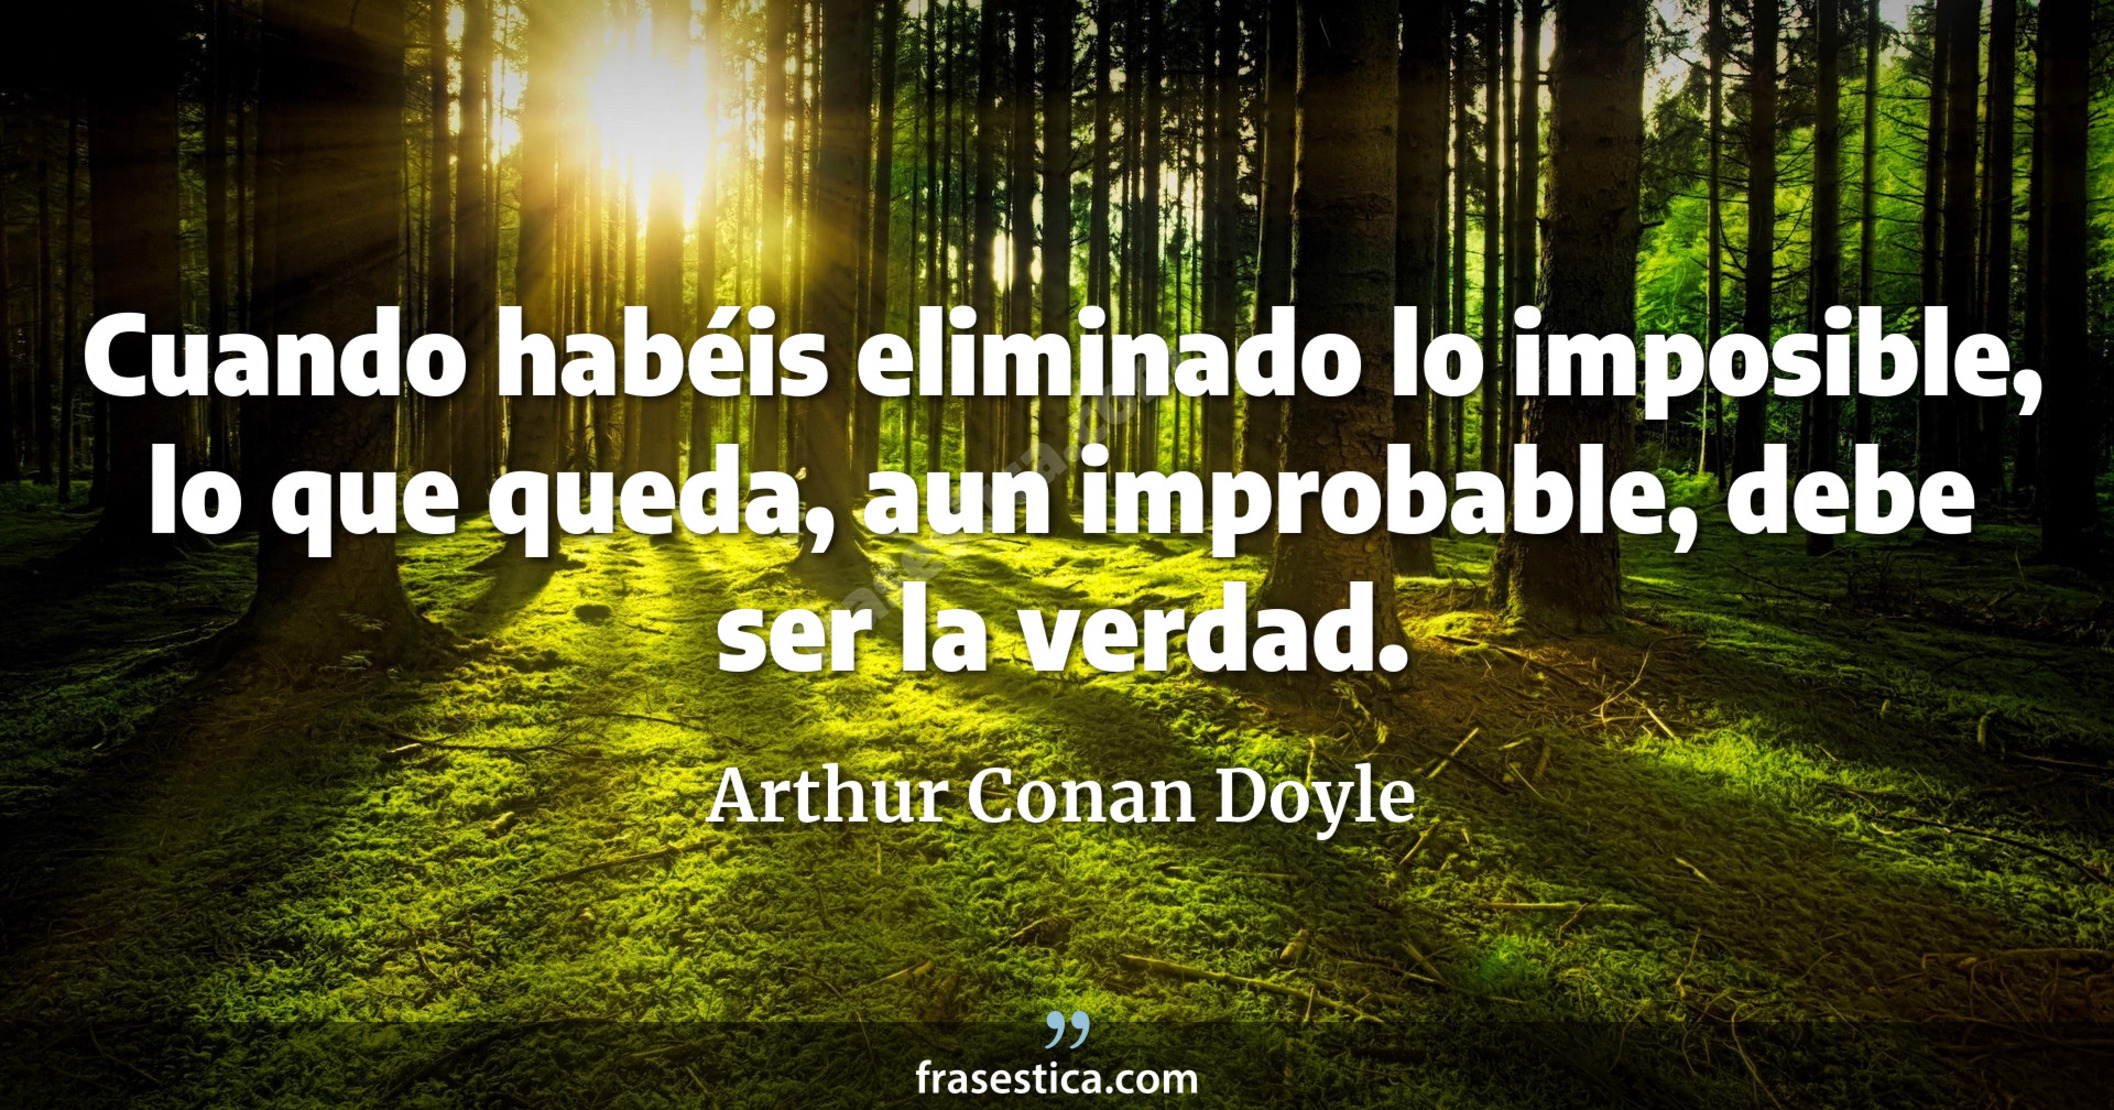 Cuando habéis eliminado lo imposible, lo que queda, aun improbable, debe ser la verdad. - Arthur Conan Doyle